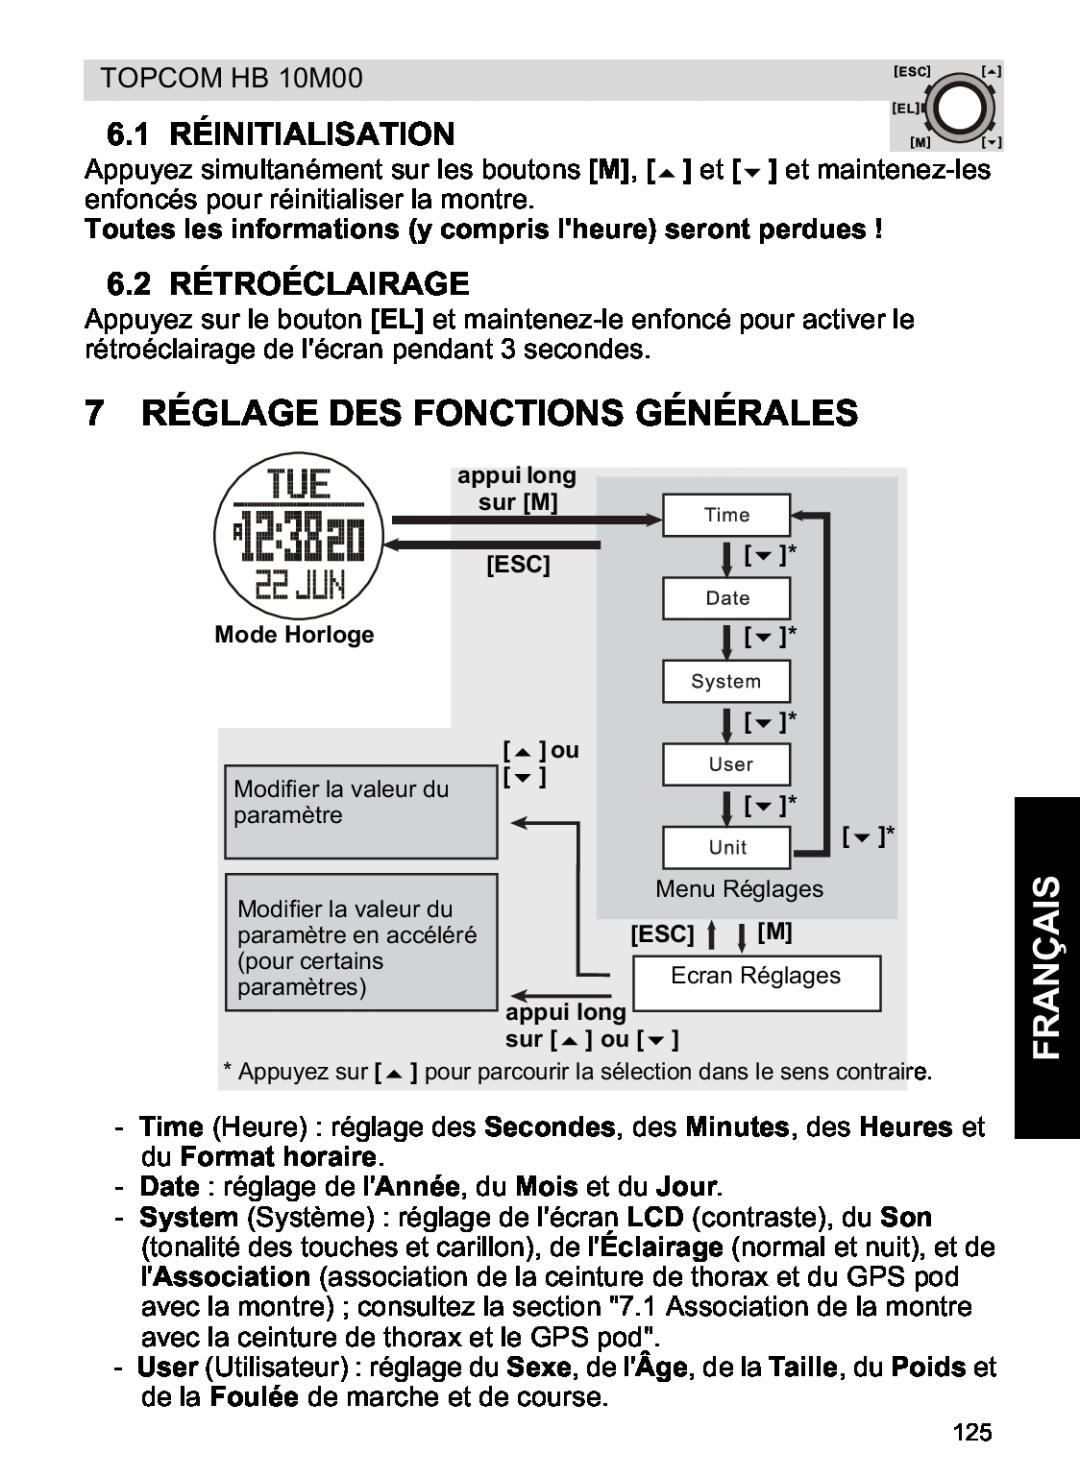 Topcom HB 10M00 manual 7 RÉGLAGE DES FONCTIONS GÉNÉRALES, 6.1 RÉINITIALISATION, 6.2 RÉTROÉCLAIRAGE, Français 